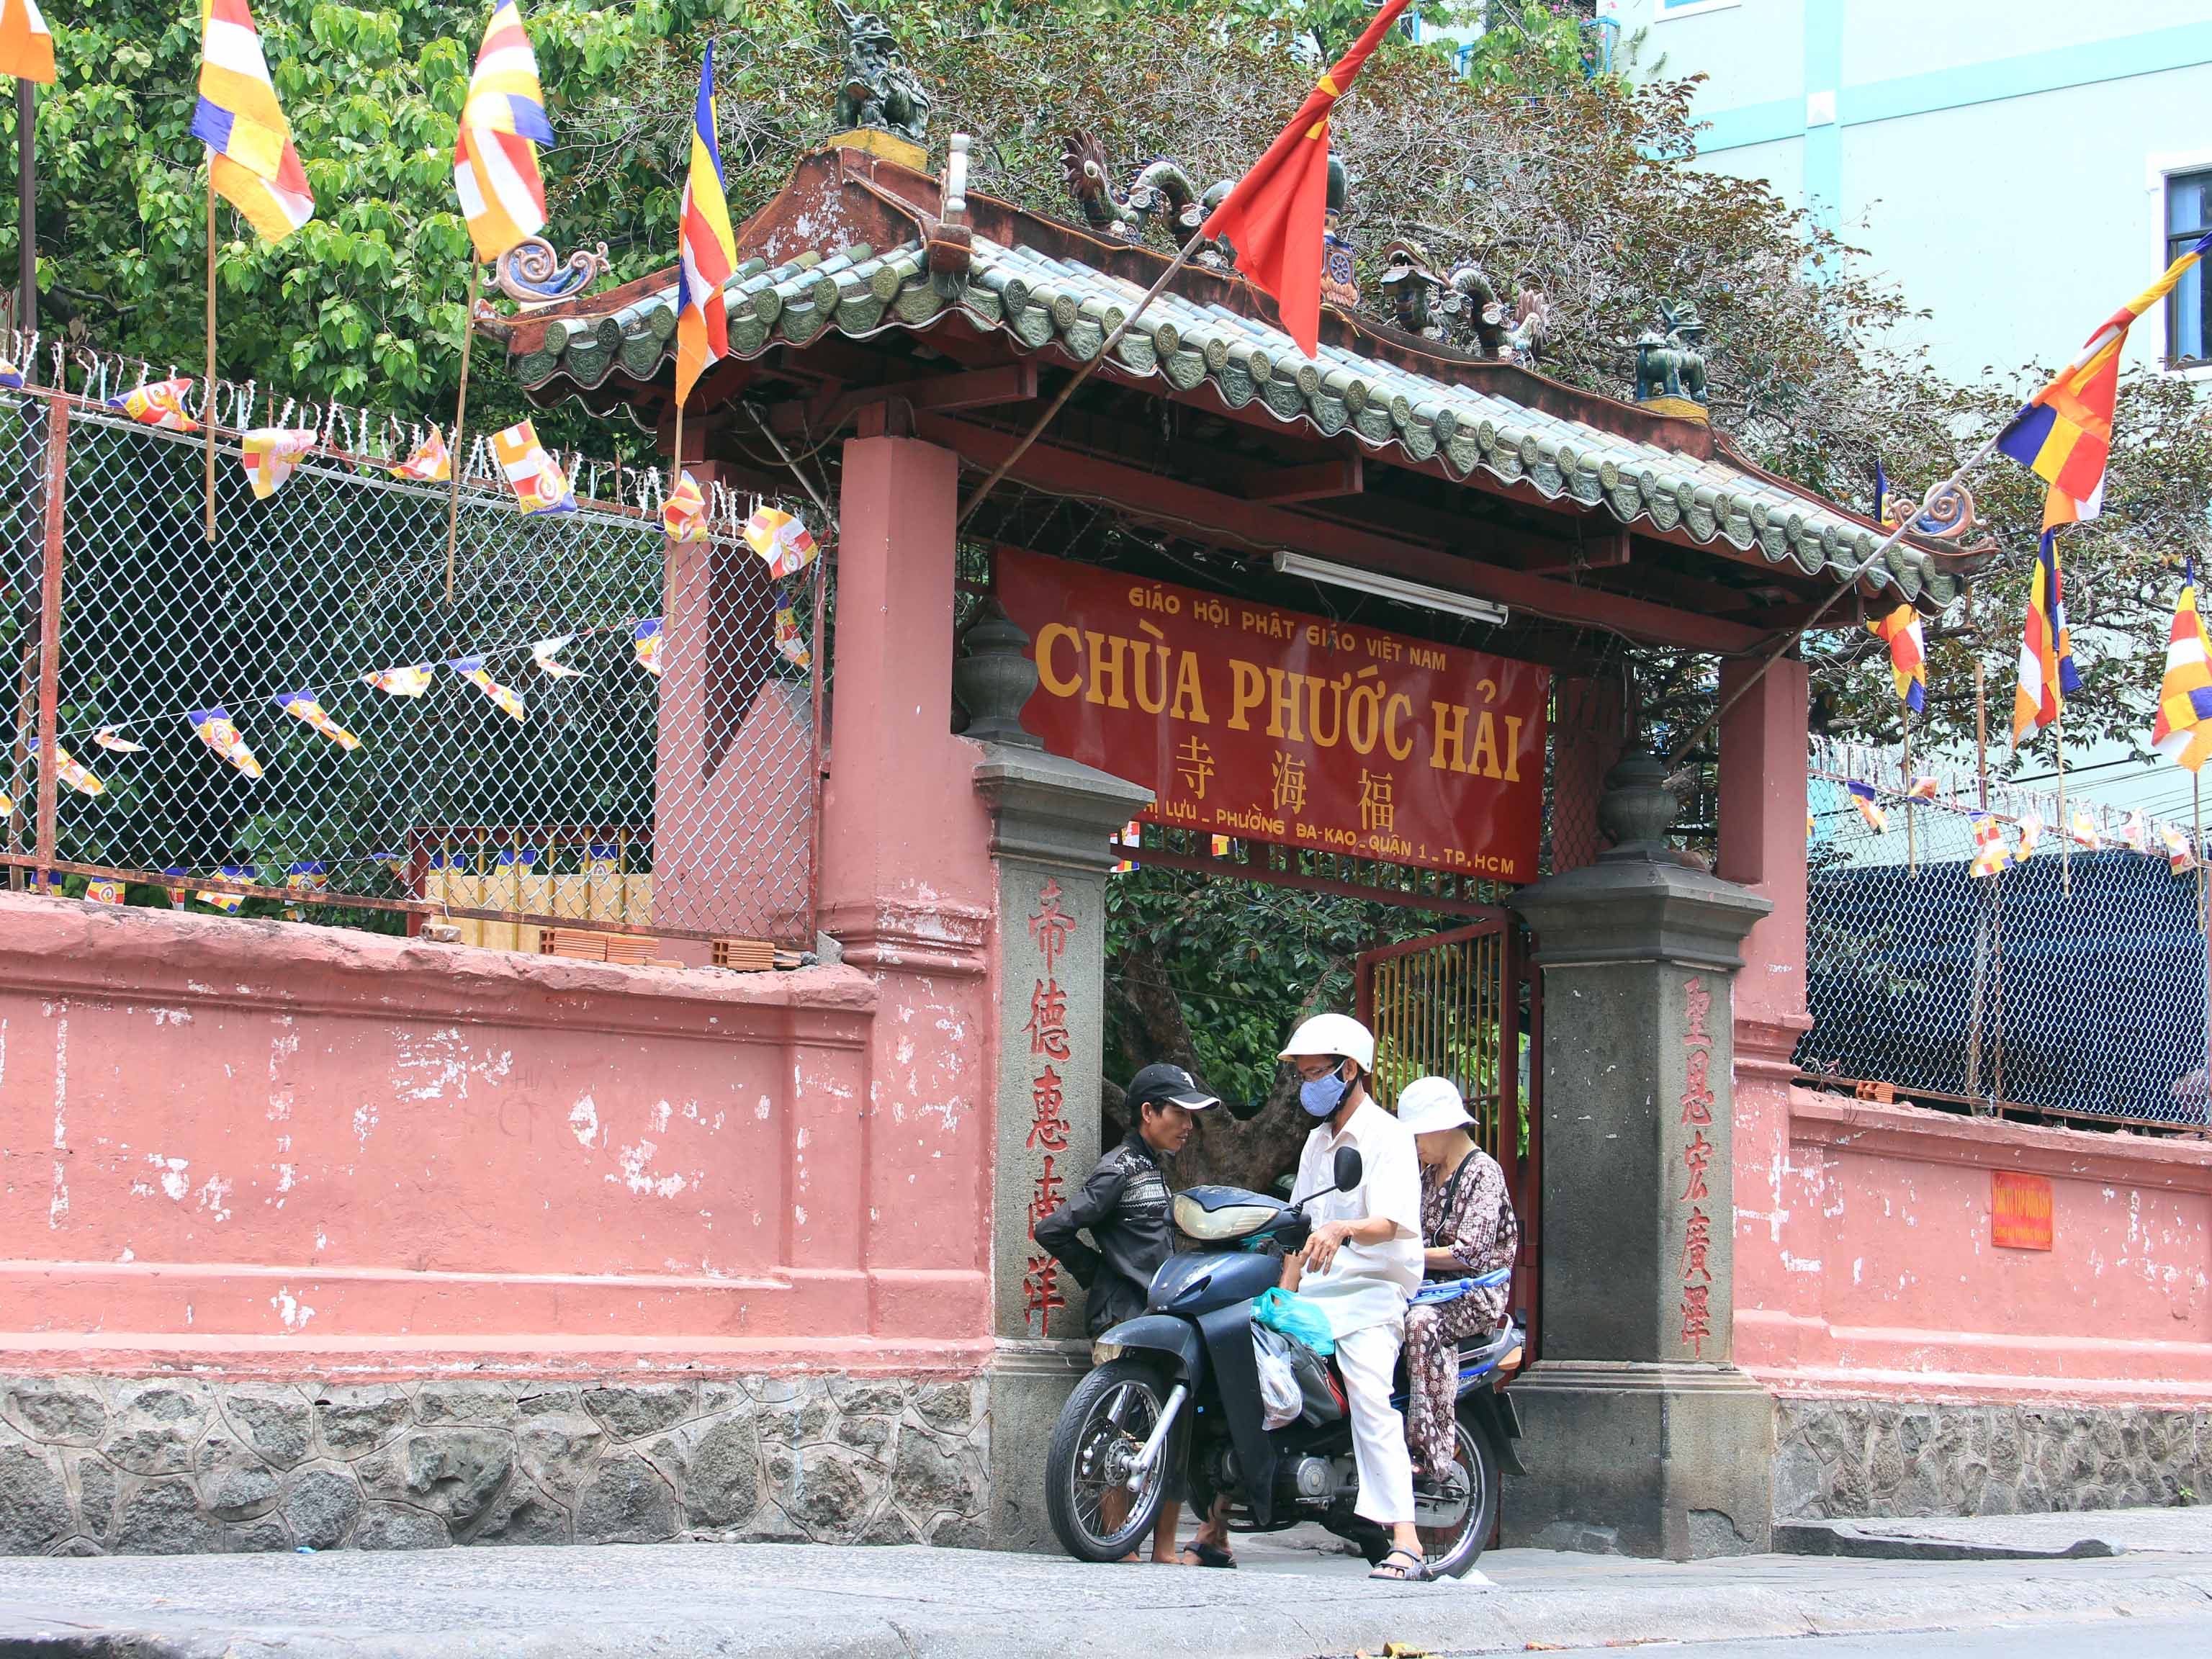 Chùa Phước Hải nằm trên đường Mai Thị Lựu (quận 1), cách đường Điện Biên Phủ khoảng 100m. Đường Mai Thị Lựu không rộng nhưng có nhiều phương tiện thường xuyên qua lại